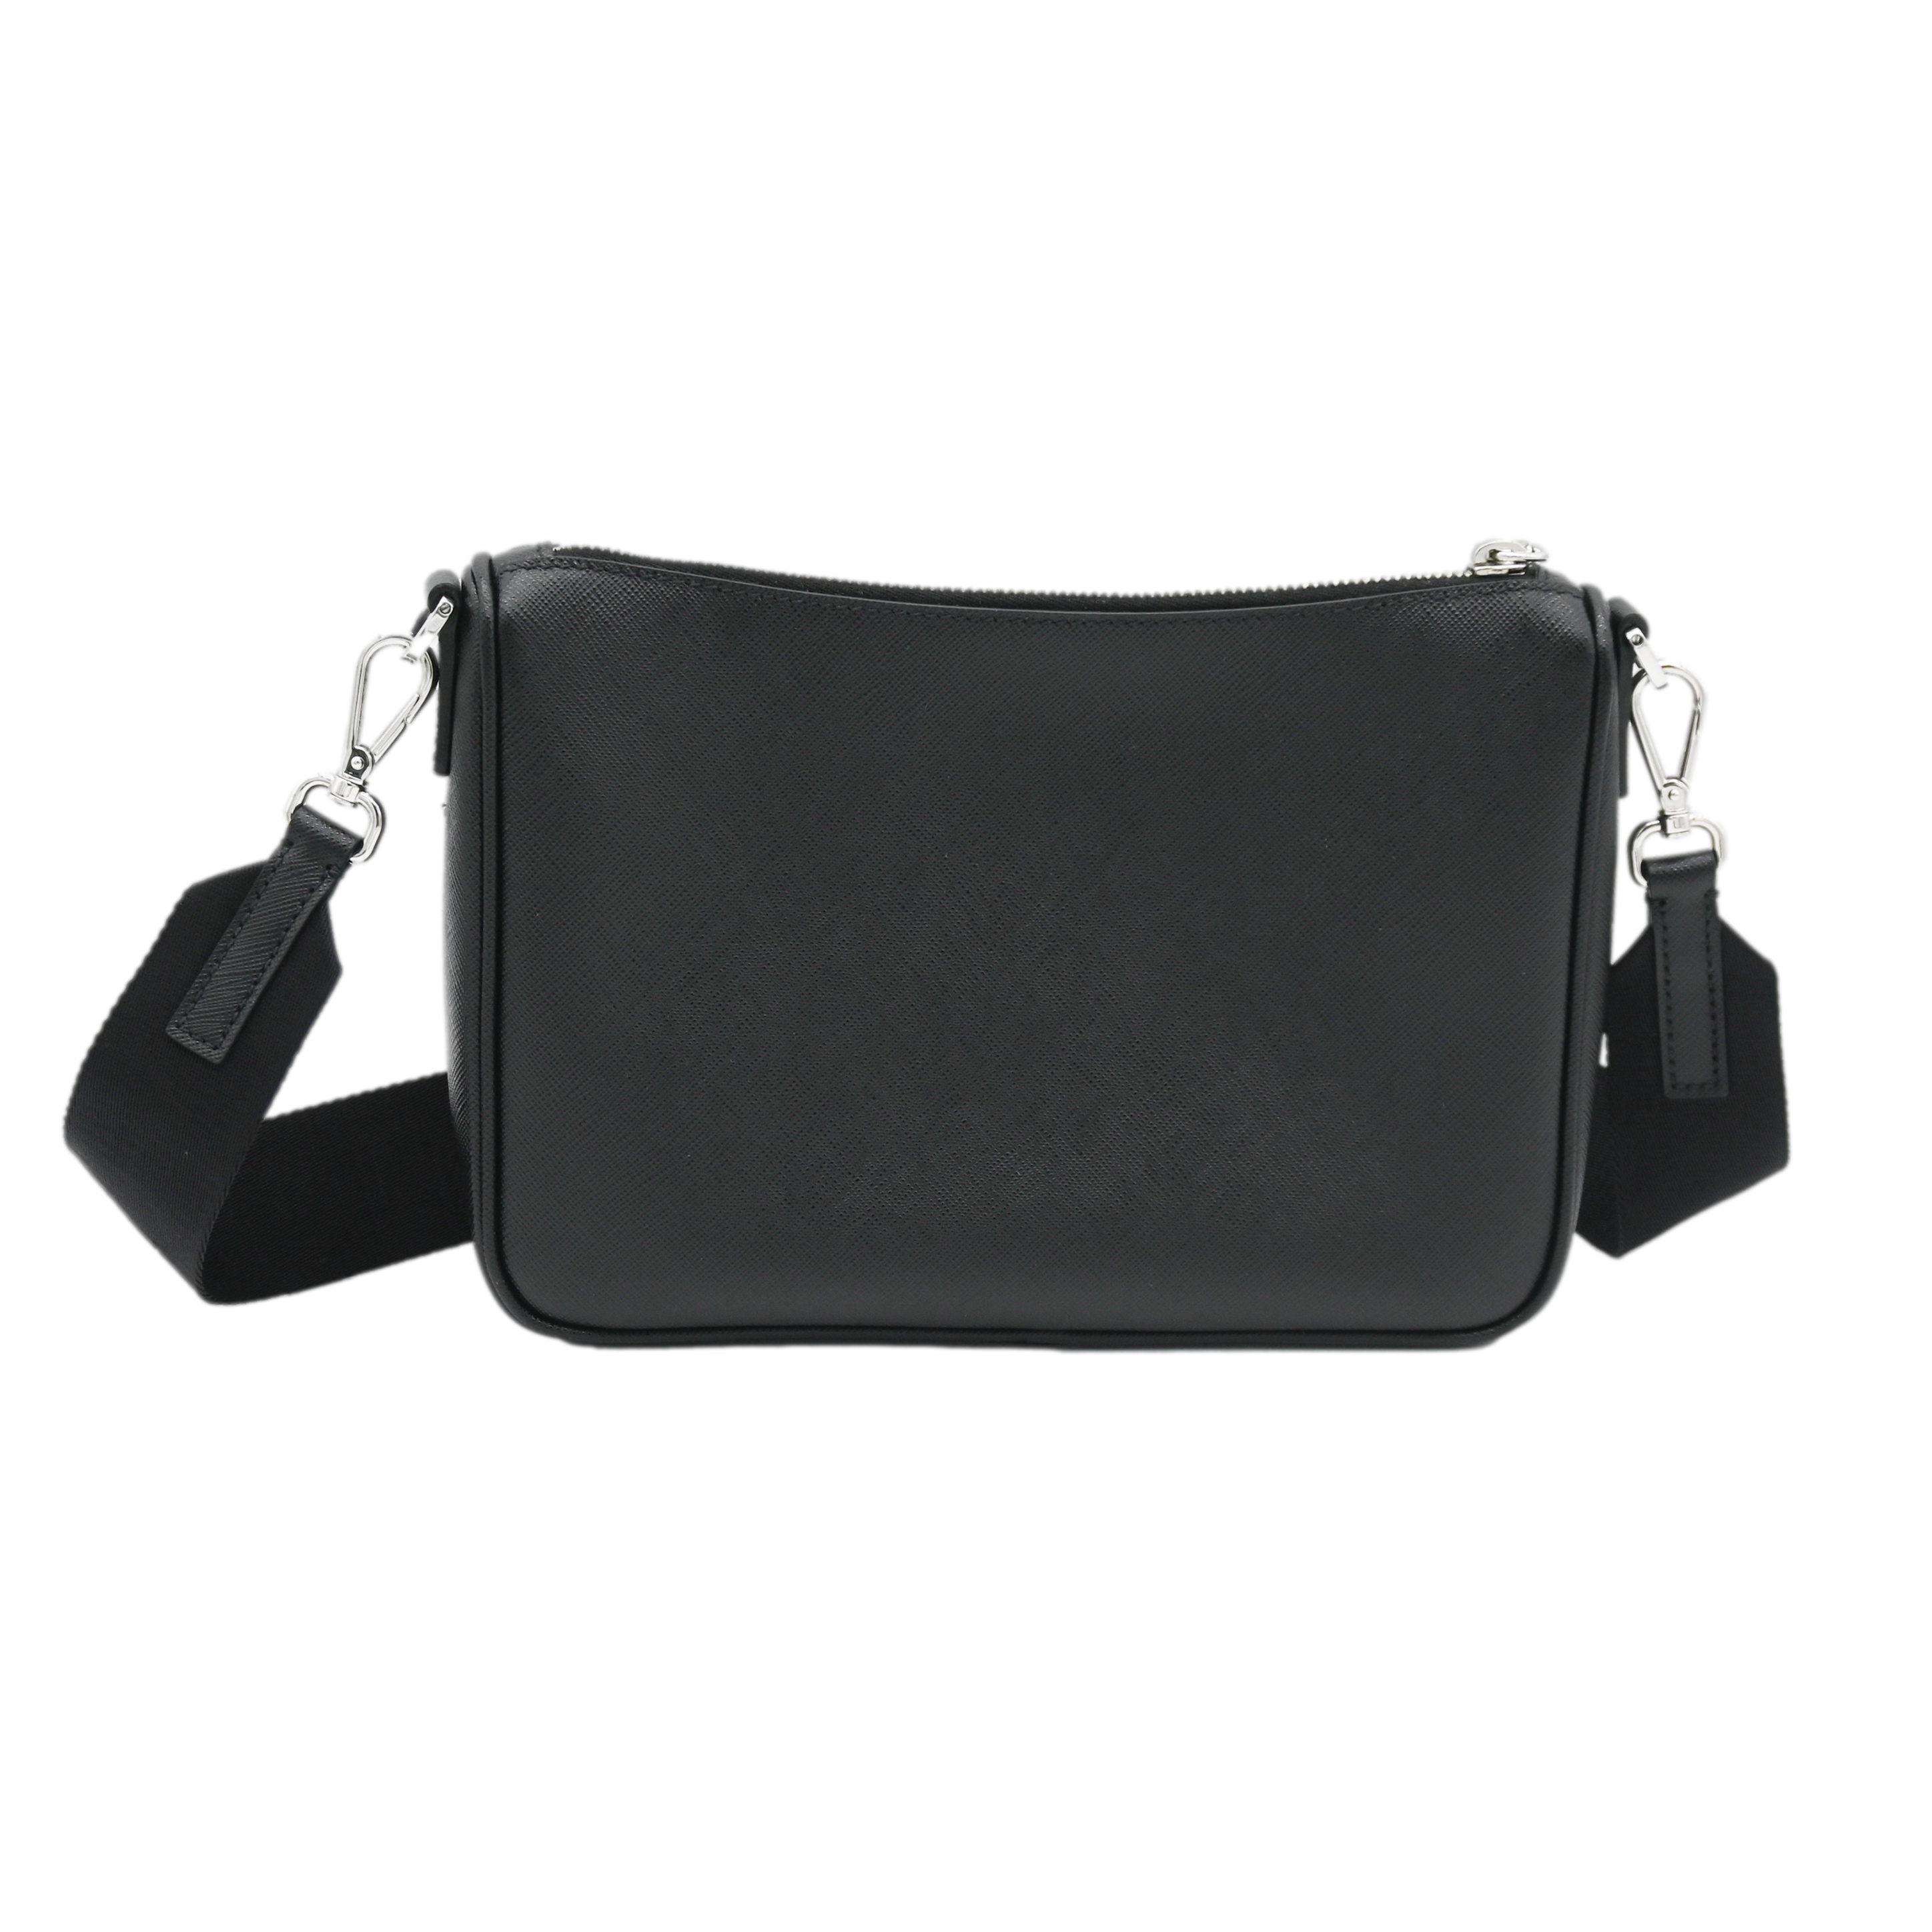 PRADA Prada Men's Saffiano Leather Crossbody Bag Black - Vault 55